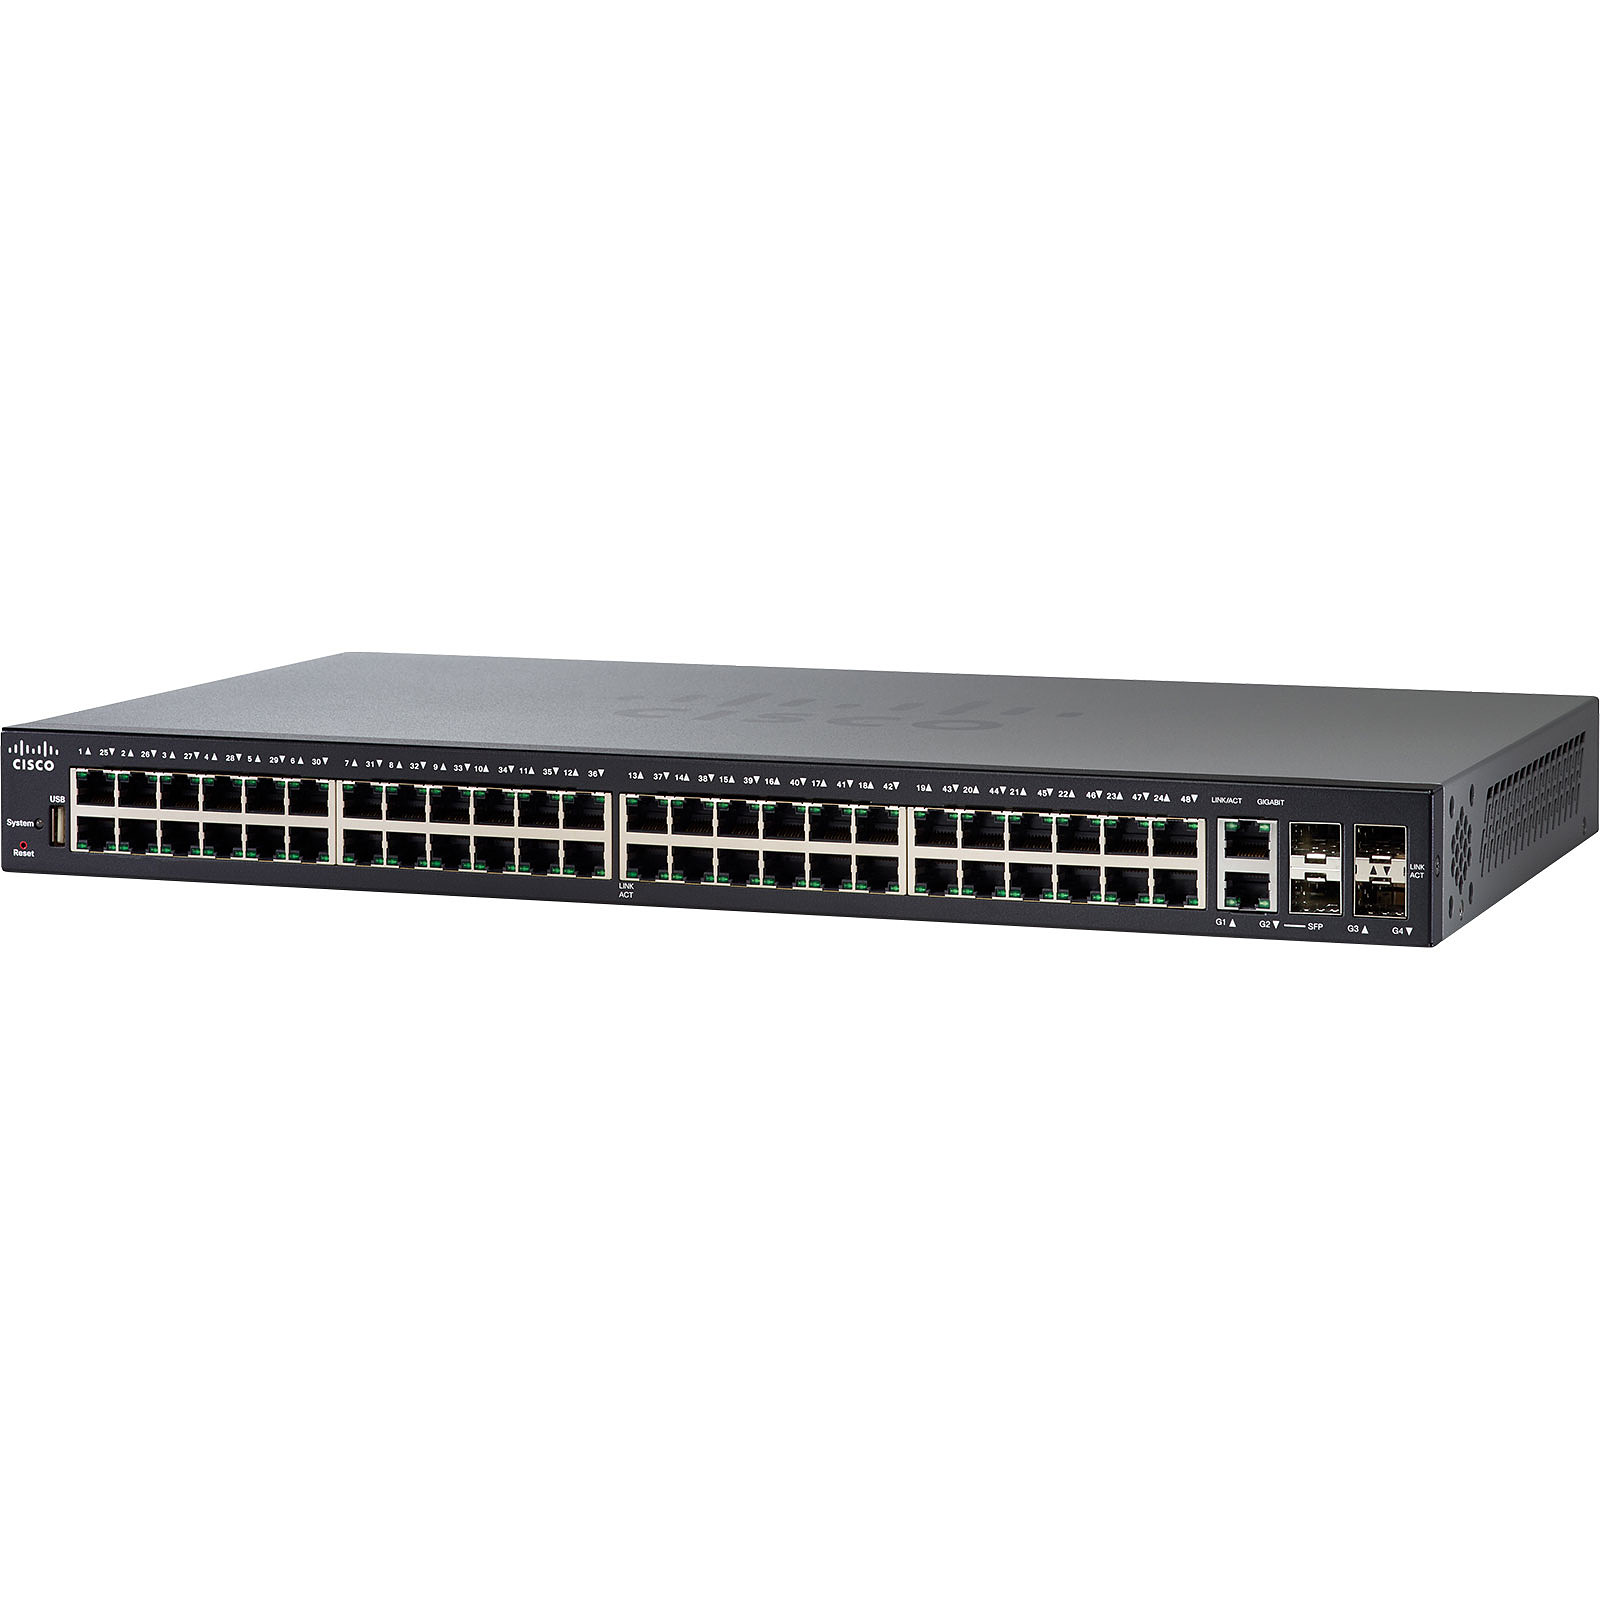 Cisco SG350-52 - Switch Cisco Systems